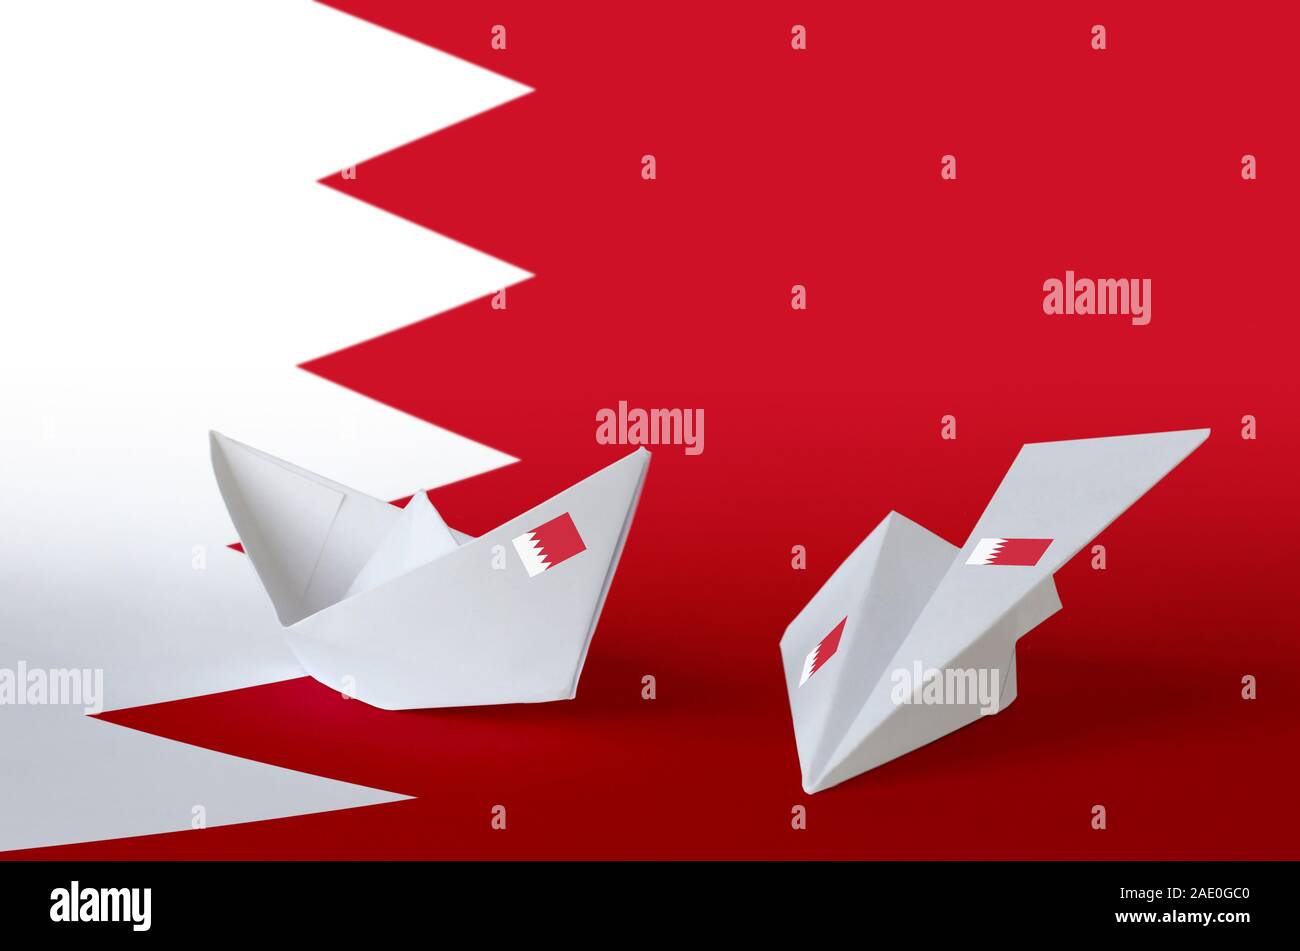 Drapeau Bahreïn représentés sur l'origami papier avion et bateau. Concept arts artisanaux orientaux Banque D'Images